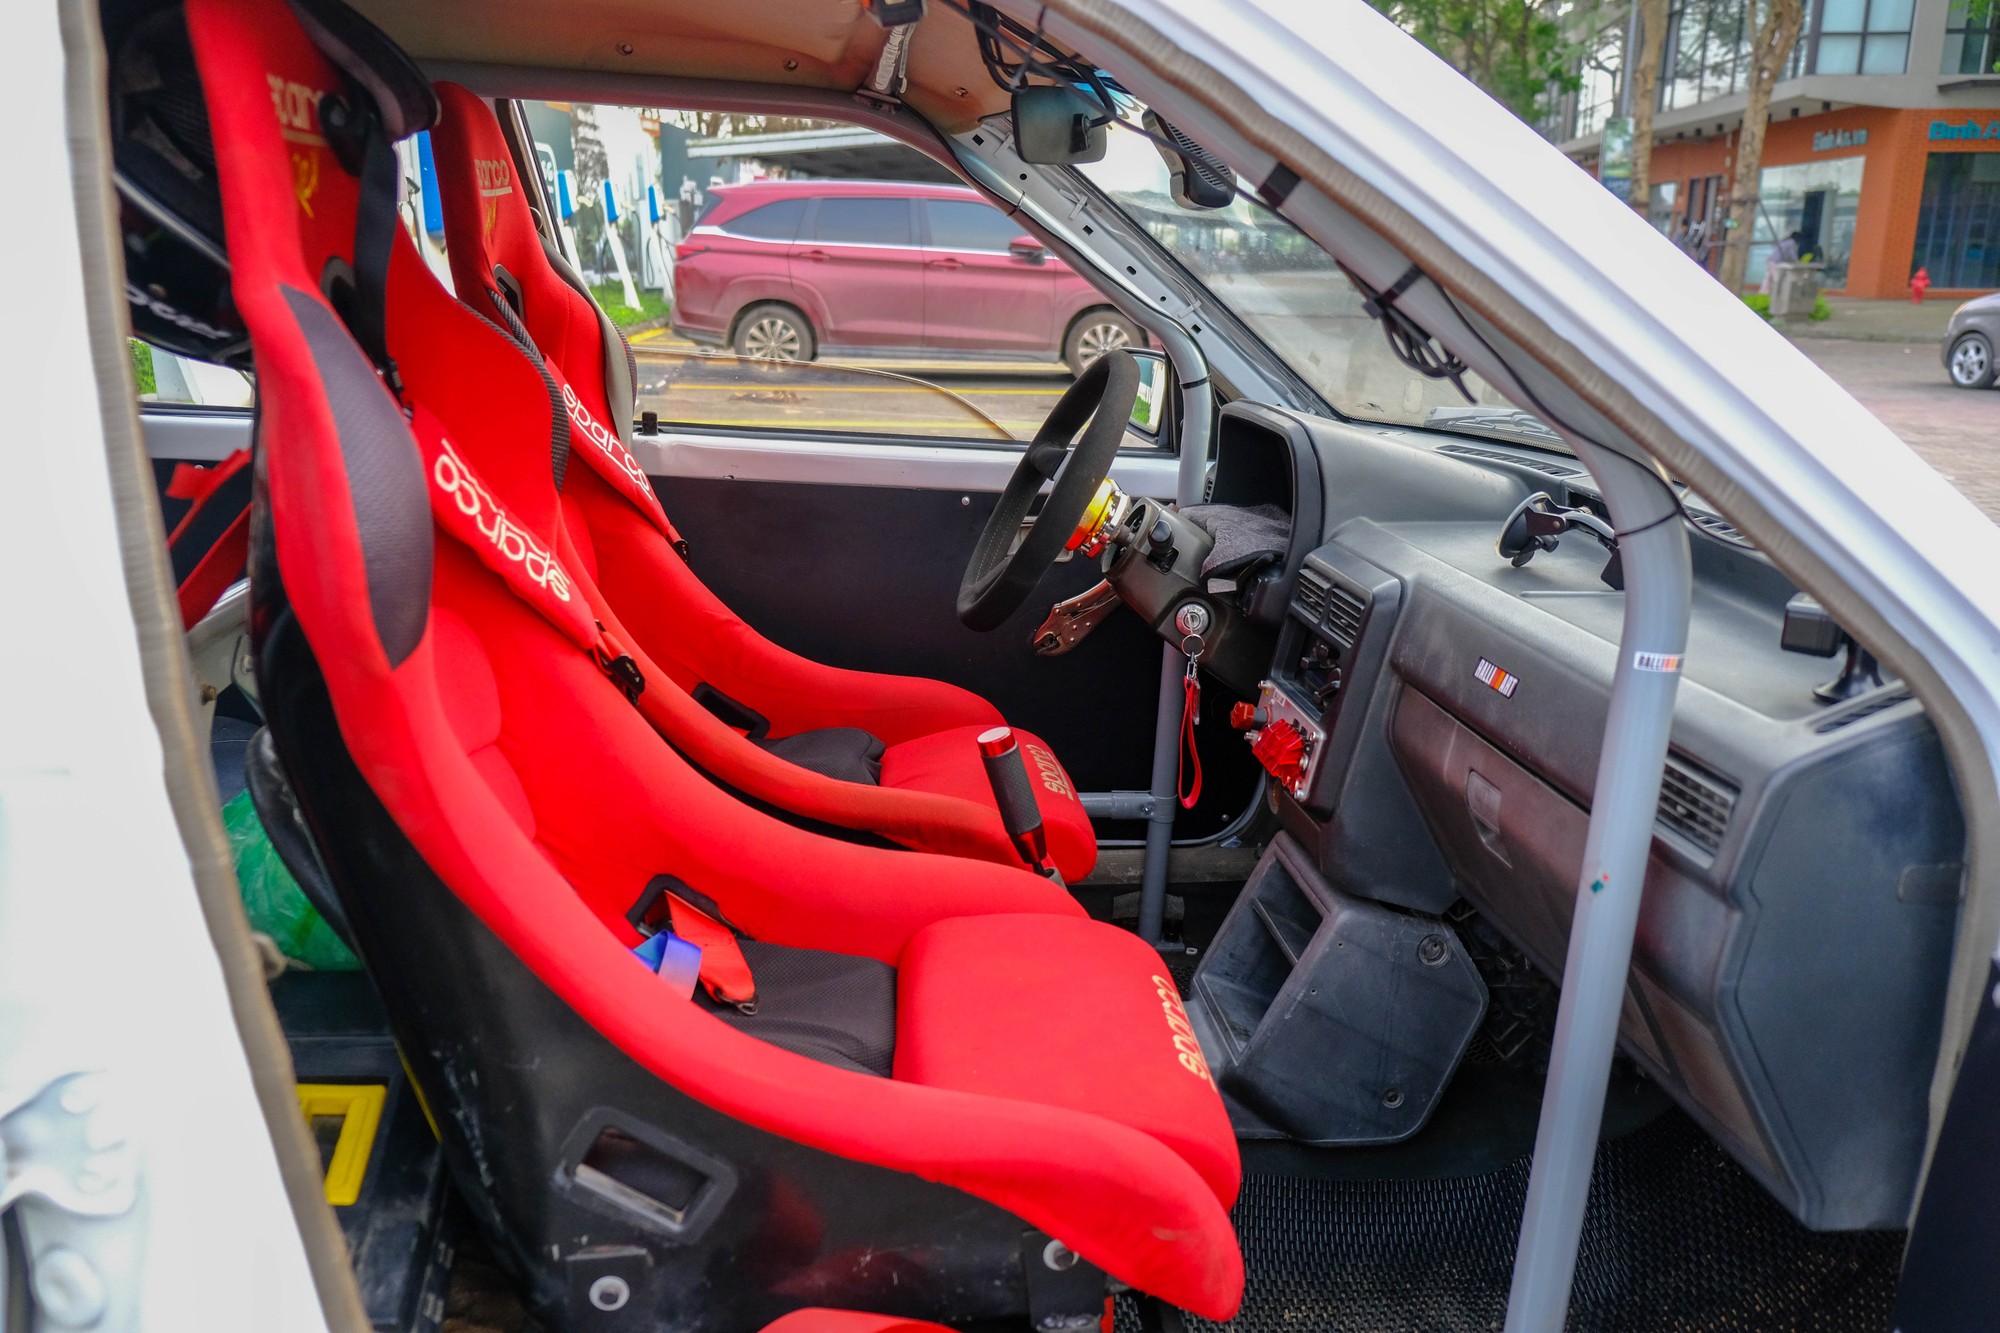 Vì được định vị trở thành một chiếc xe đua, nên phần nội thất bên trong xe tập trung vào khả năng vận hành. Nổi bật là hai ghế trước của thương hiệu Sparco với dây đai an toàn 6 điểm được lắp từ chiếc Mitsubishi Triton của đội đua AKA Racing từng tham dự 3 giải AXCR. Ảnh: Lê An/Mekong ASEAN.